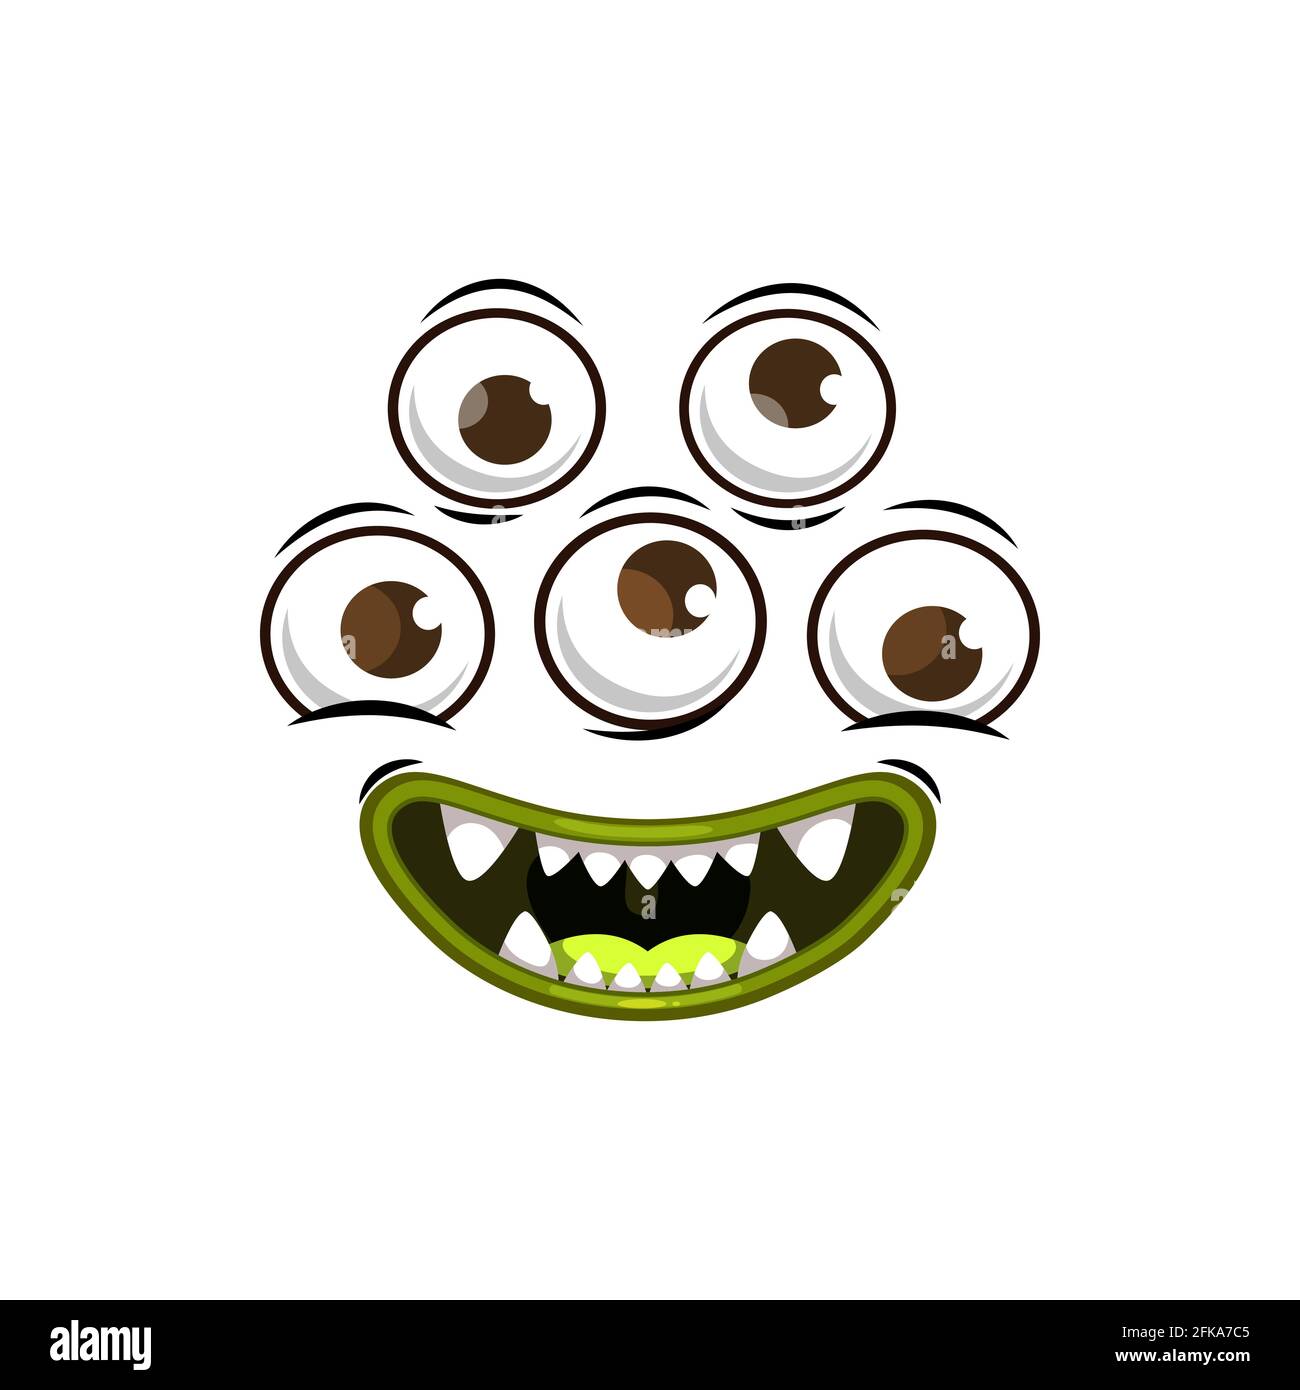 Monster Face Cartoon Vektor-Symbol, gruselige Kreatur, Emotion mit drei runden Augen und lächelnd toothy Mund mit Reißzähne. Halloween Alien gespenstische Emoji iso Stock Vektor